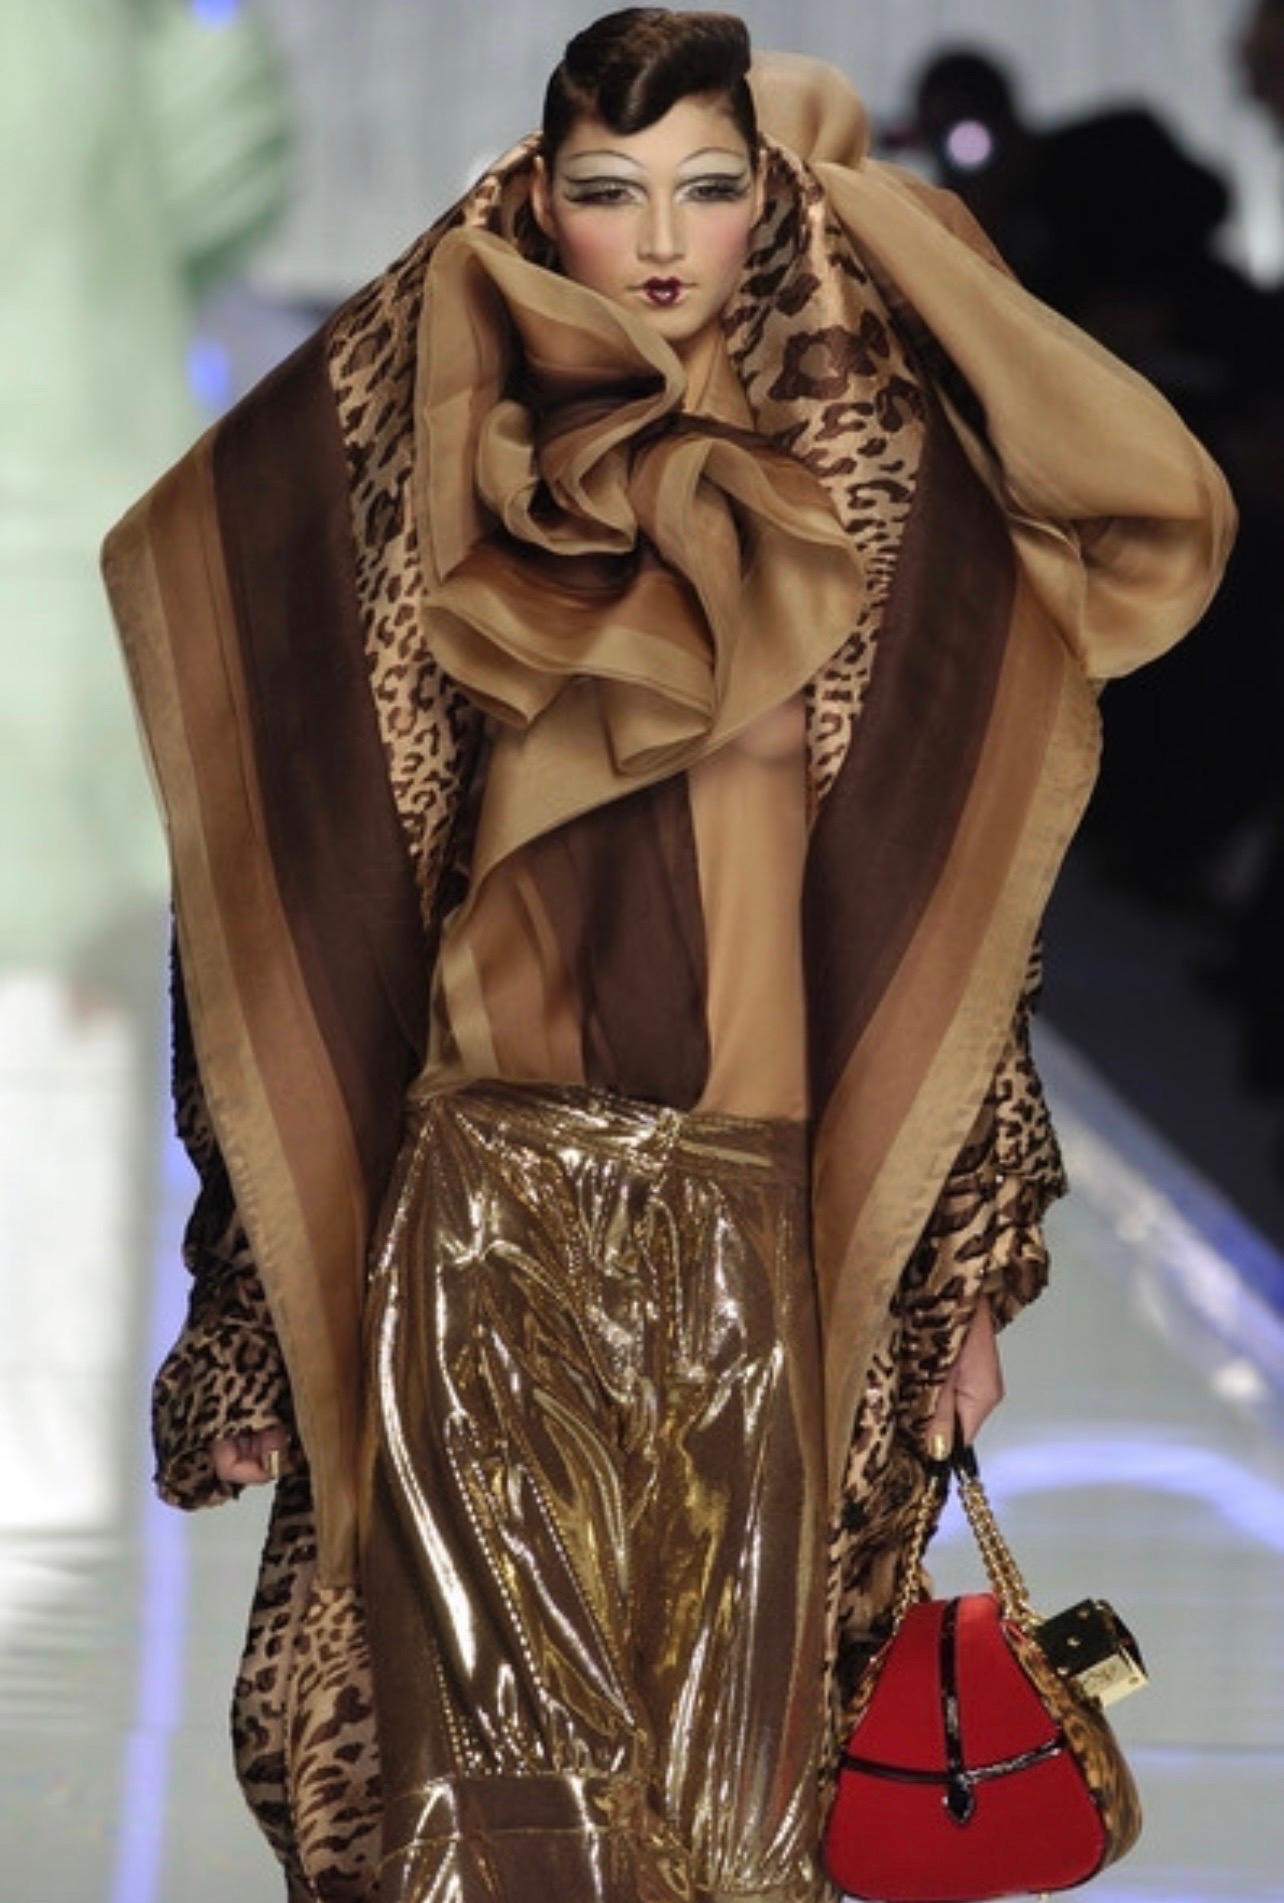 Un sac d'un luxe absolu avec une peau de poney teintée de léopard, des détails en velours rouge et une quincaillerie dorée avec les célèbres dés du logo Dior bedazzled + des détails en cuir verni noir.

Comme vu sur le défilé, il s'agit d'un grand